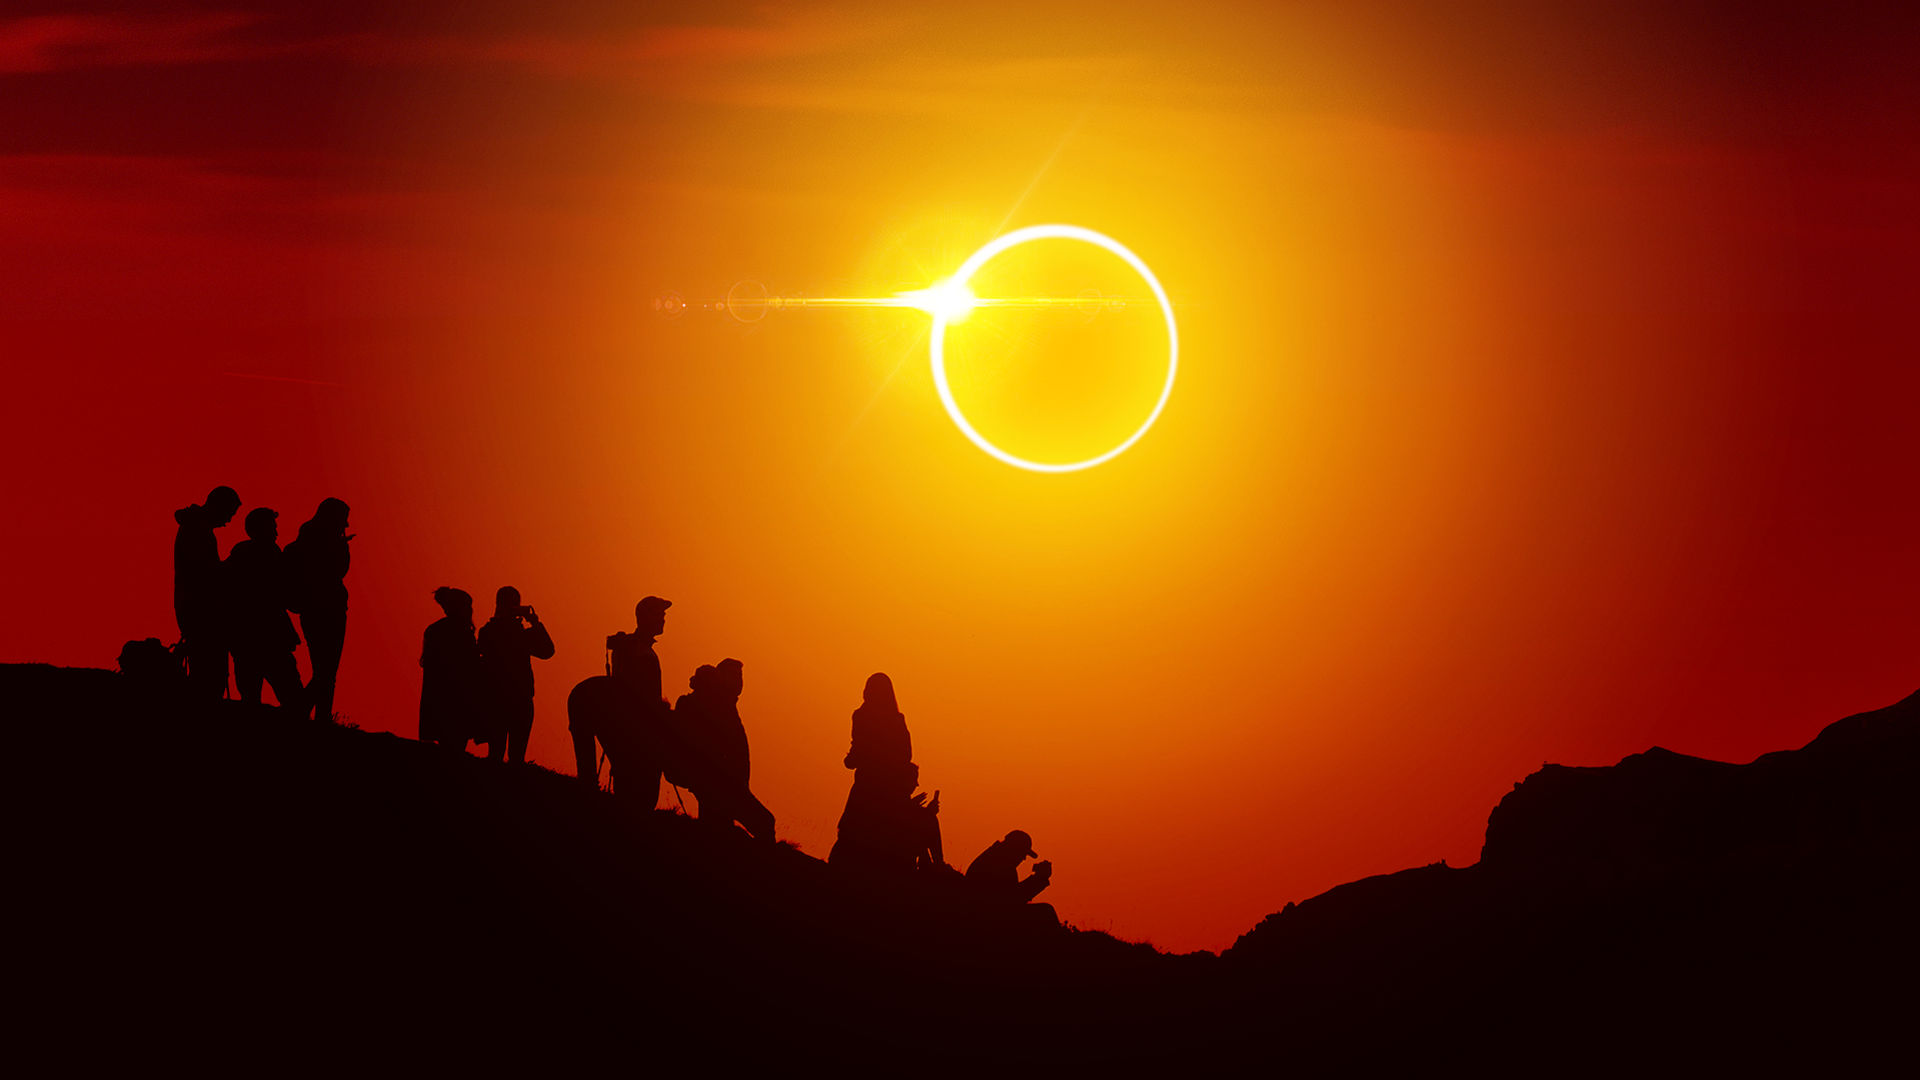 Éclipse solaire dénommée « Anneau de feu » en 2020 : quand et où l’observer